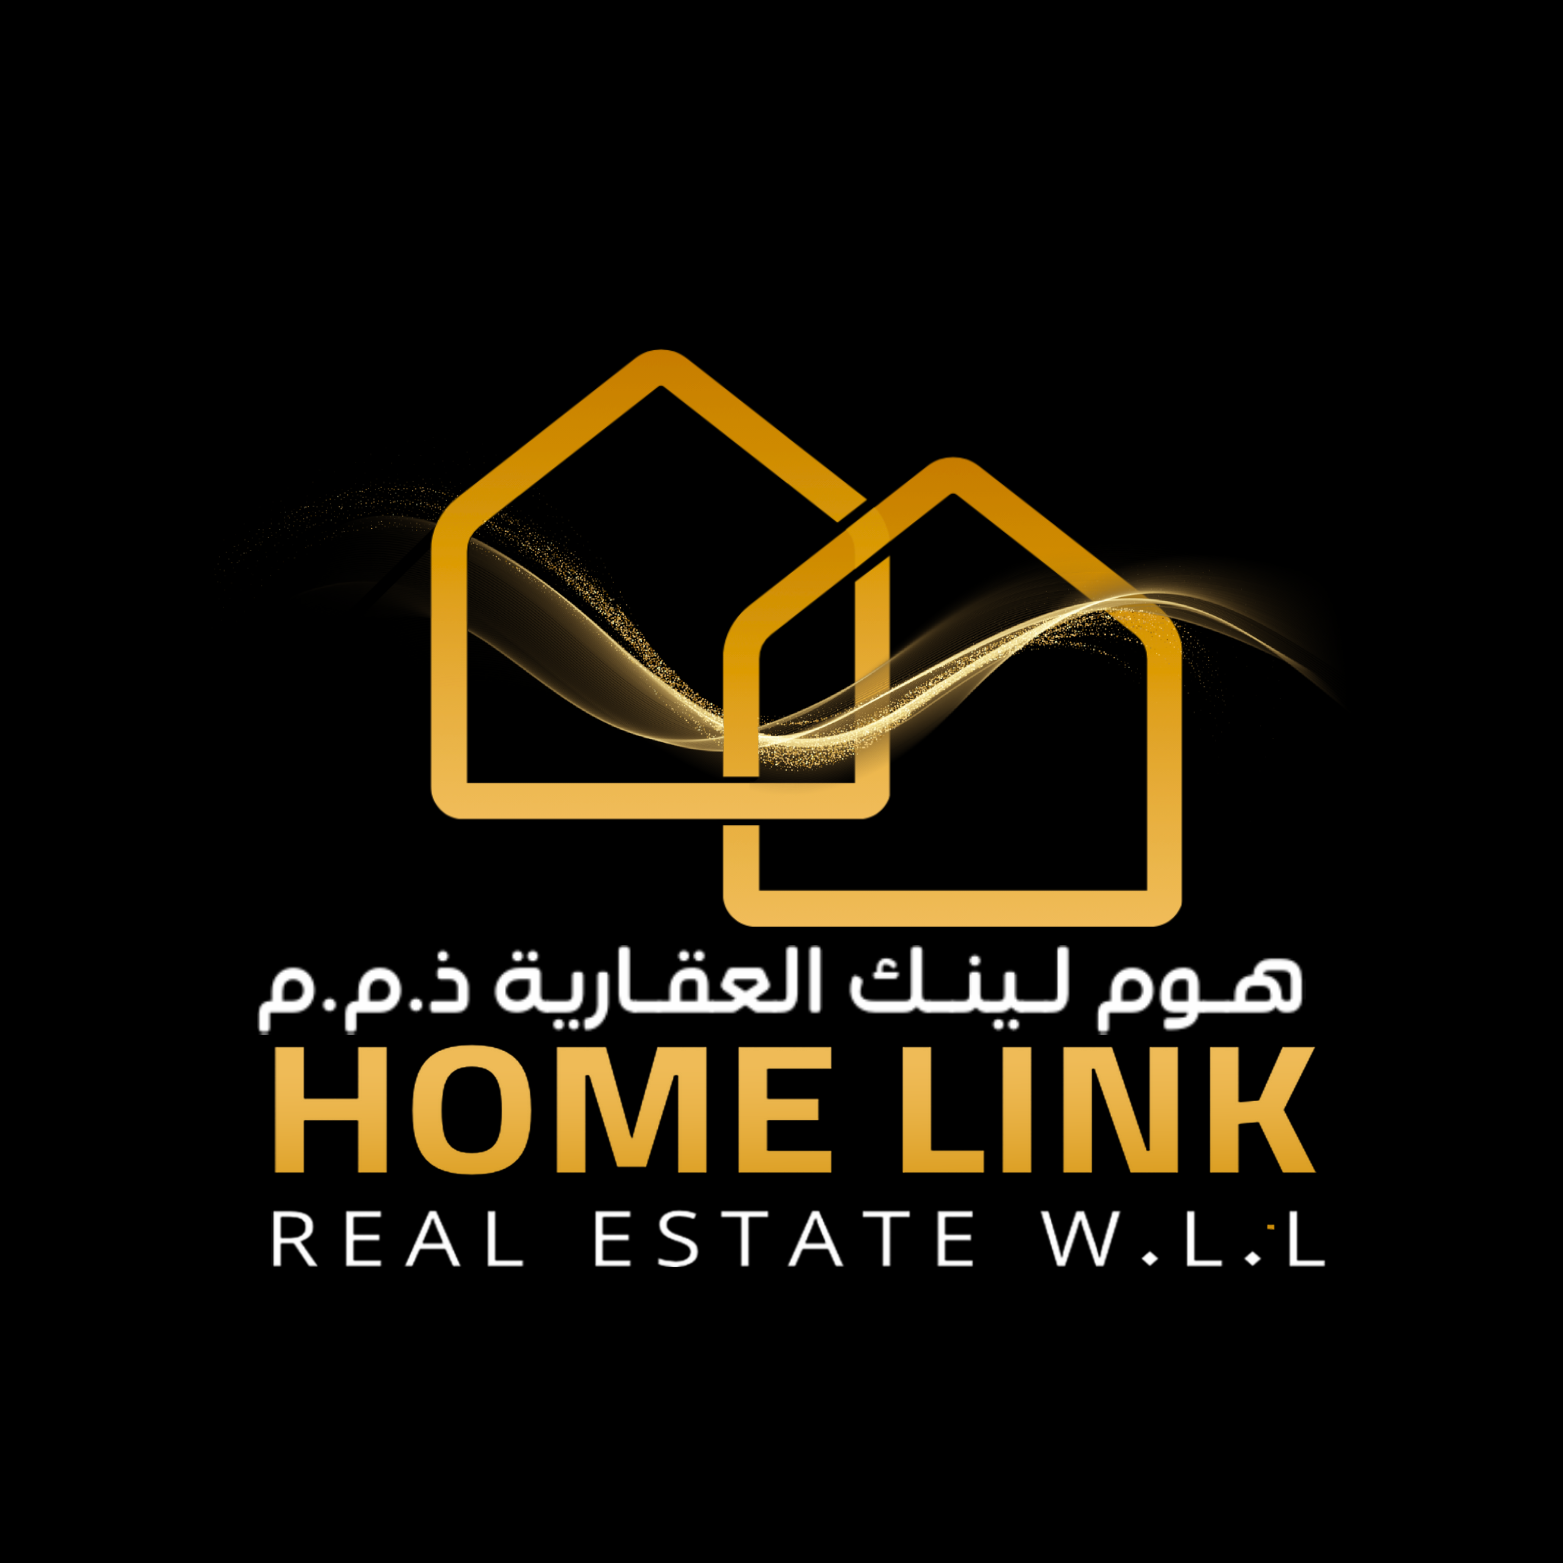 SU Home Link Real Estate W.L.L